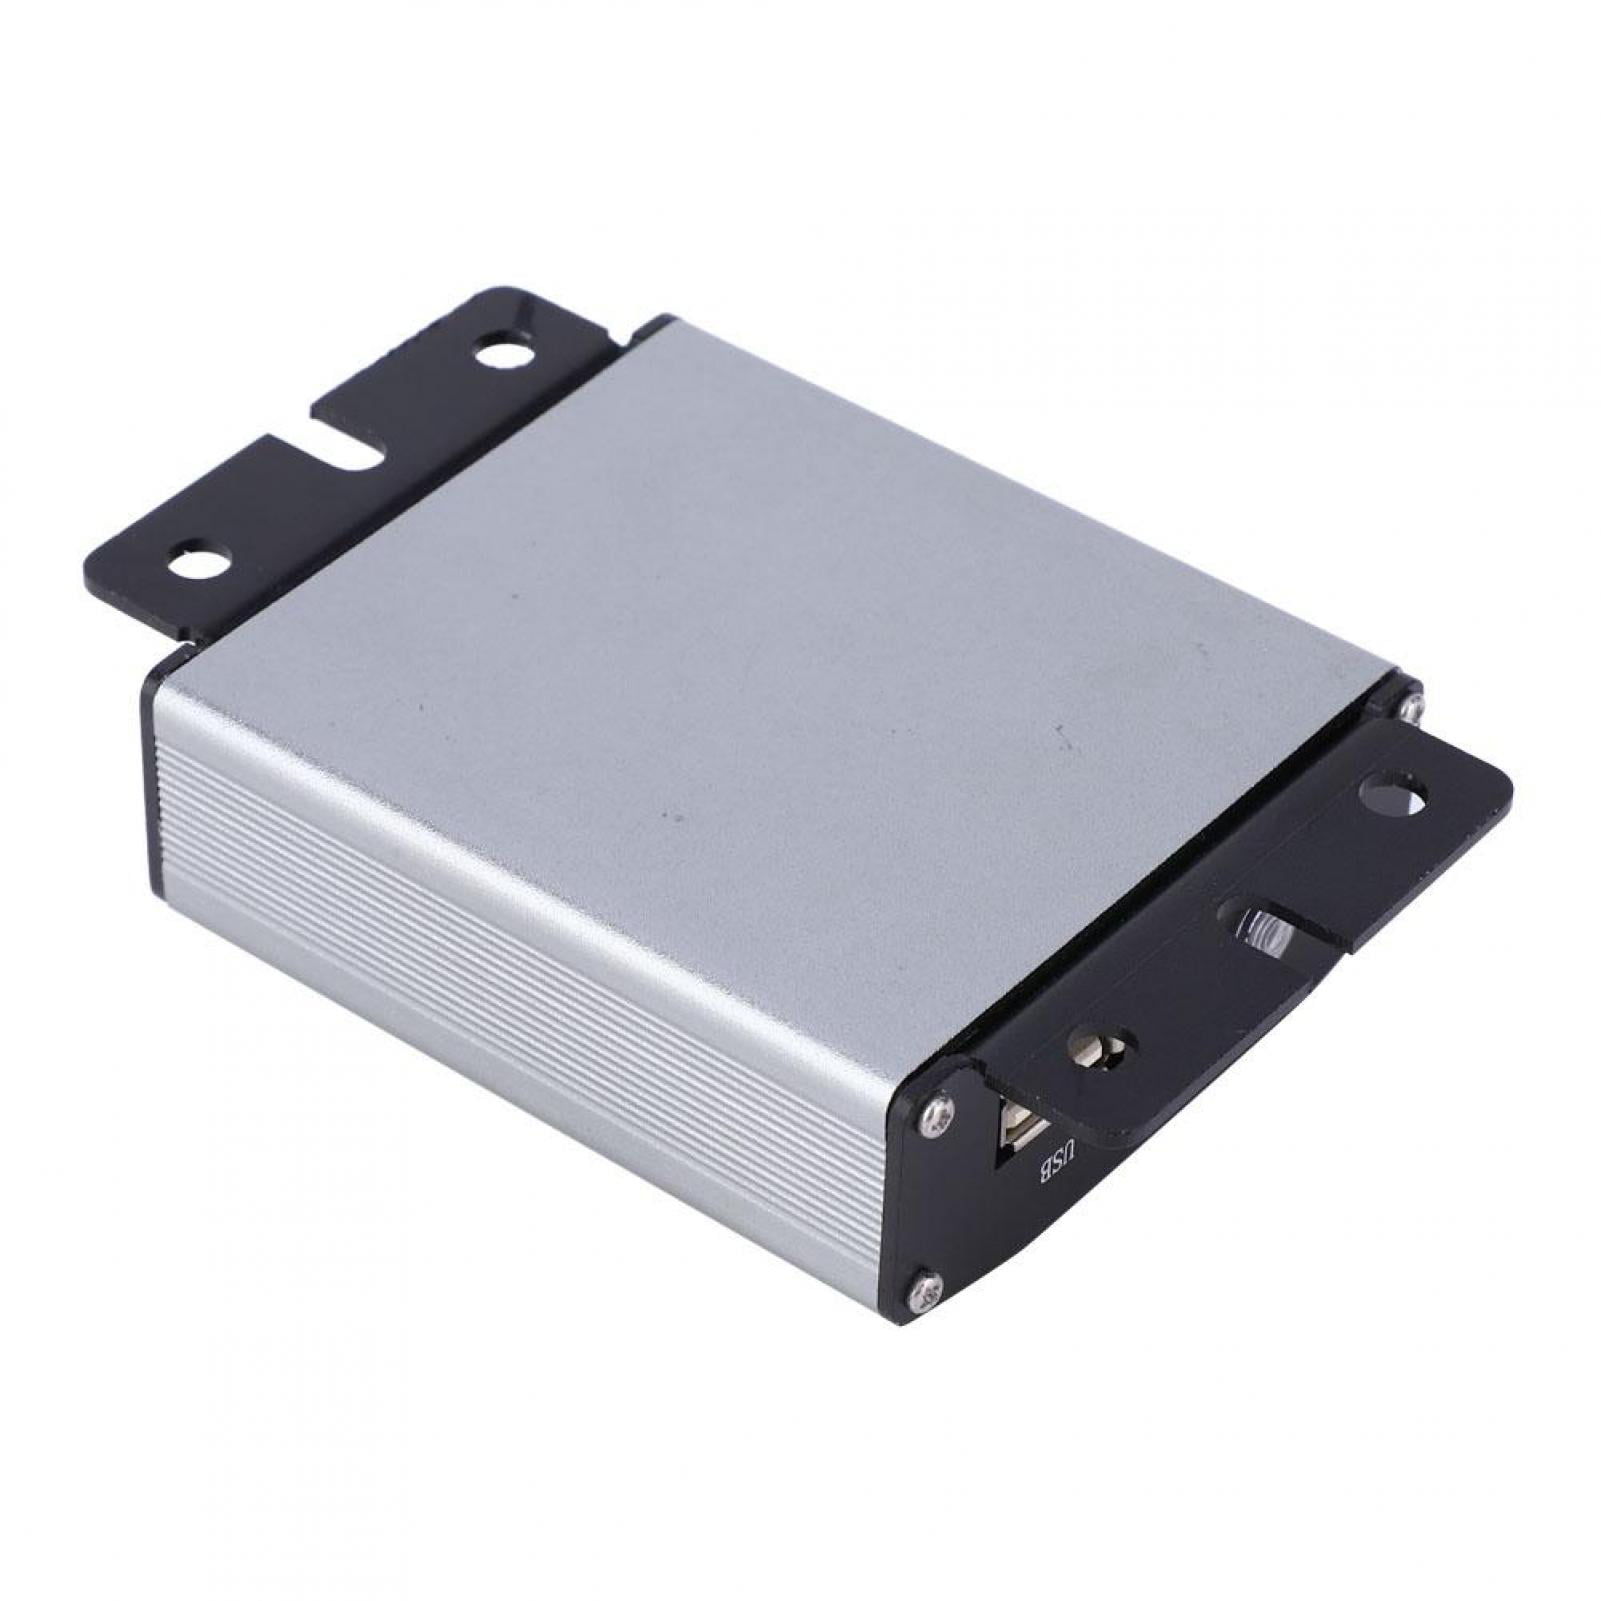 SG-DataBox for SG Series Microinverter 2.4G Wireless Communication & Monitoring 